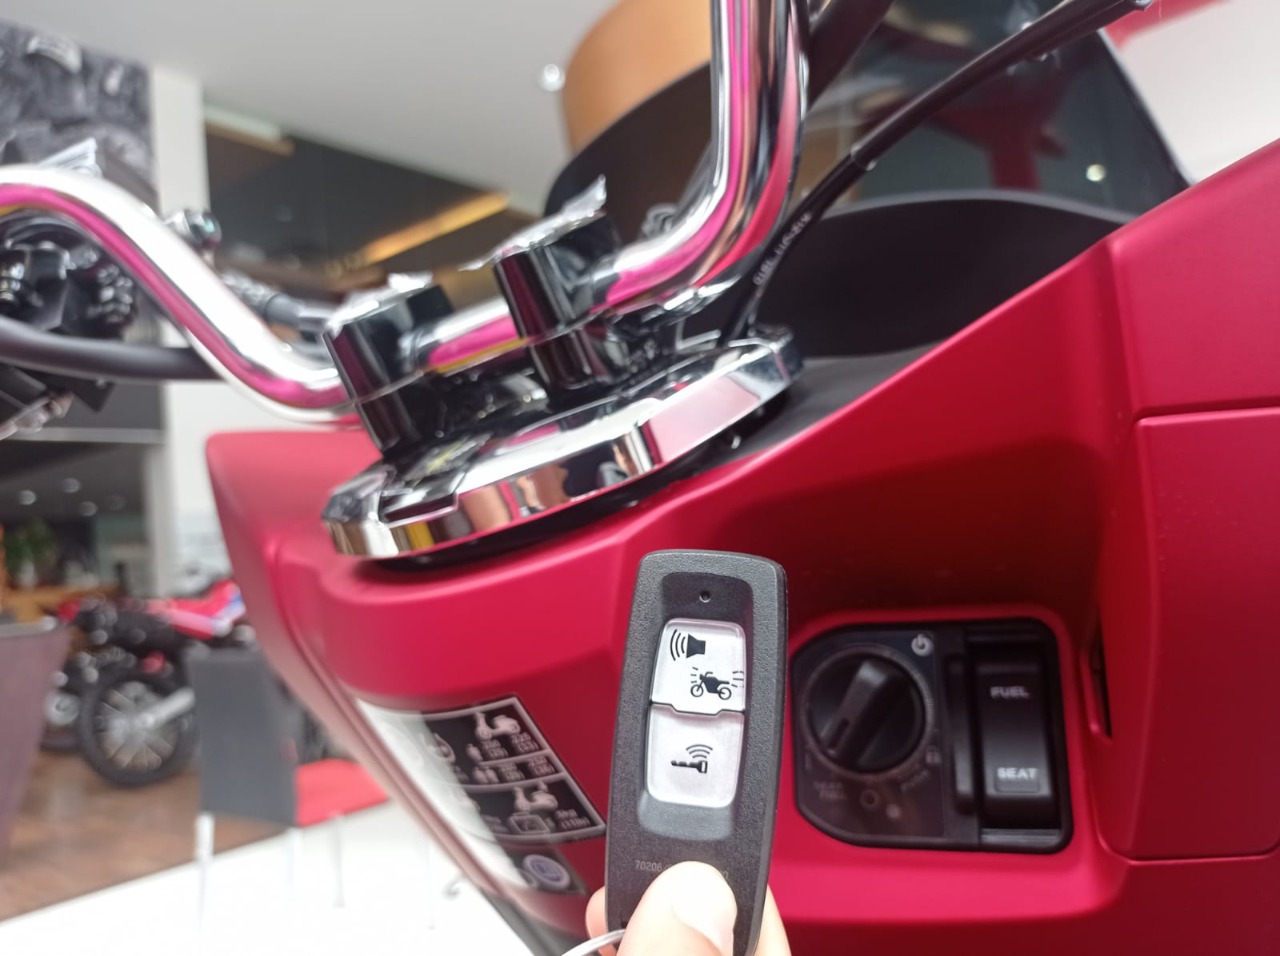 Mengenal Lebih Jauh Honda Smart Key System